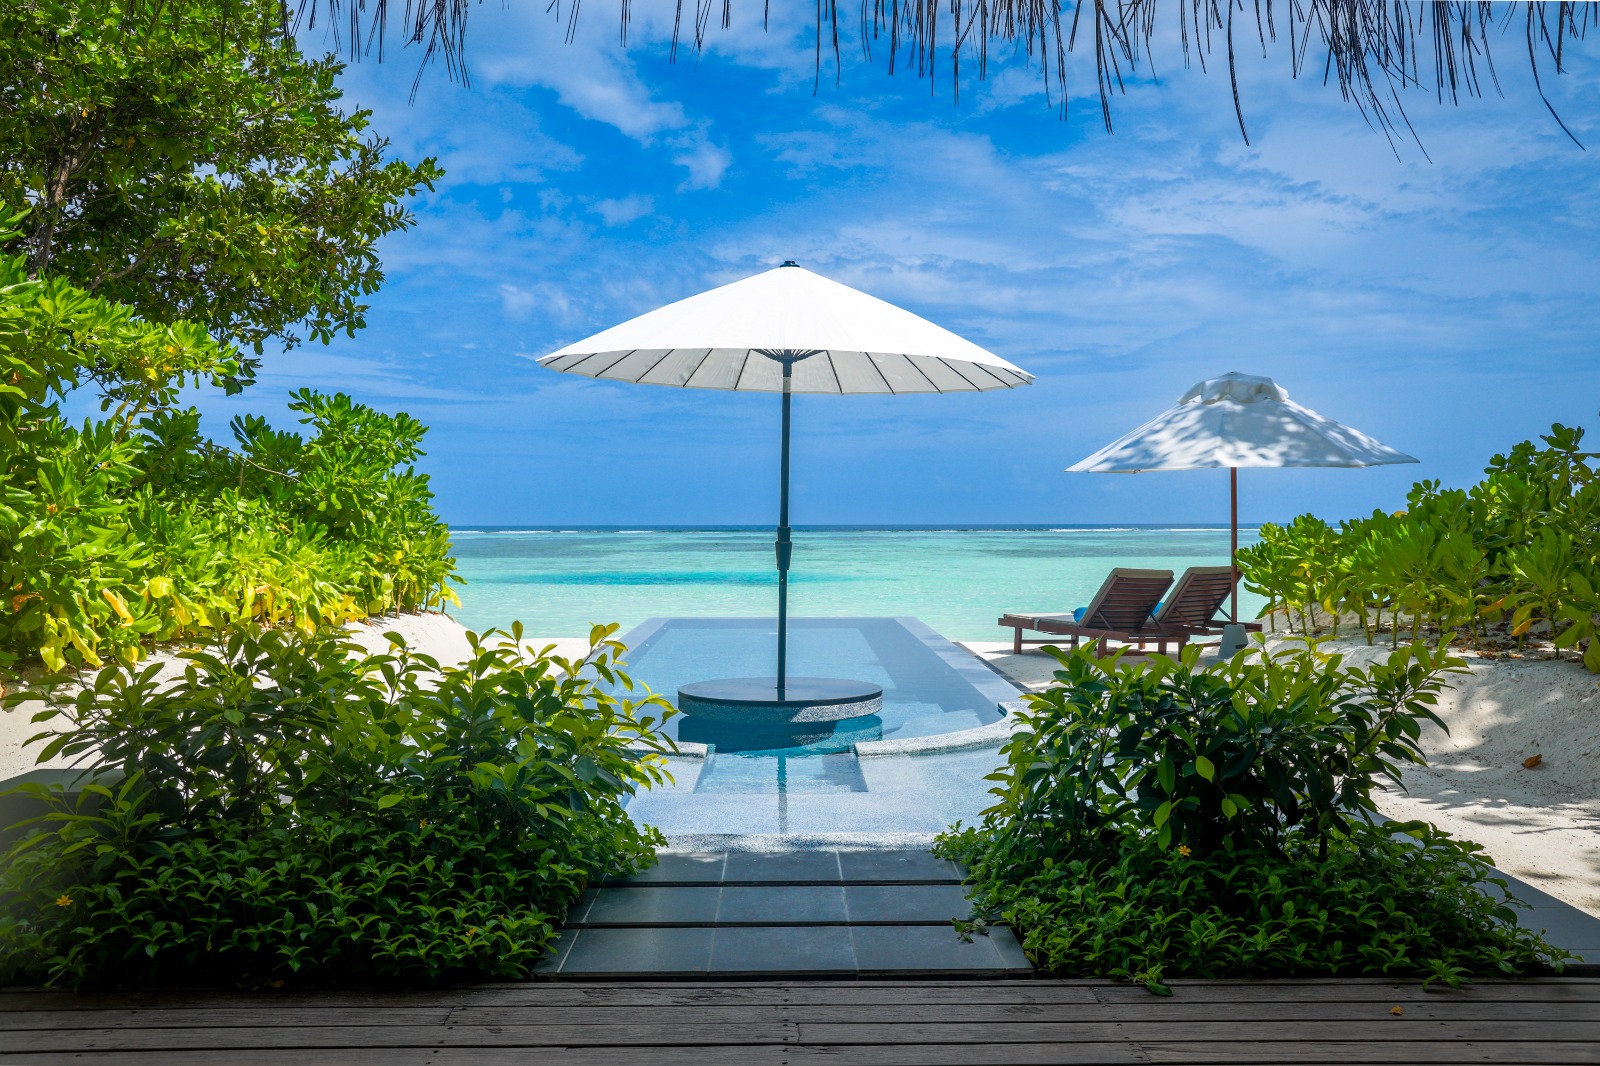 الصورة : لوحة من الجمال في جزر المالديف | البيان